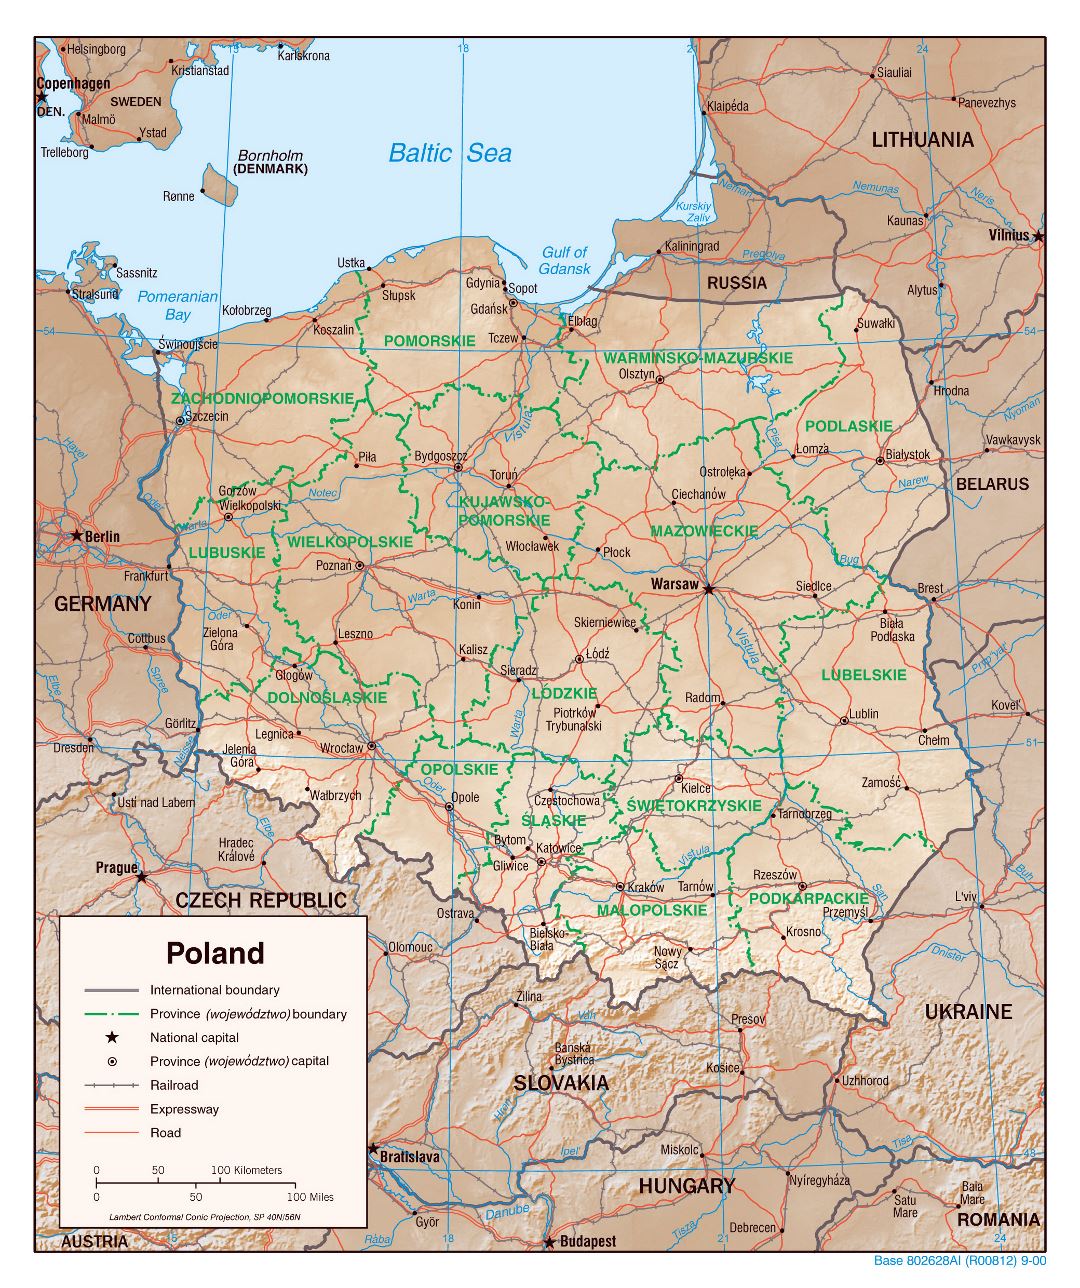 Grande detallado mapa política y administrativa de Polonia con alivio, carreteras, vías férreas y principales ciudades - 2000